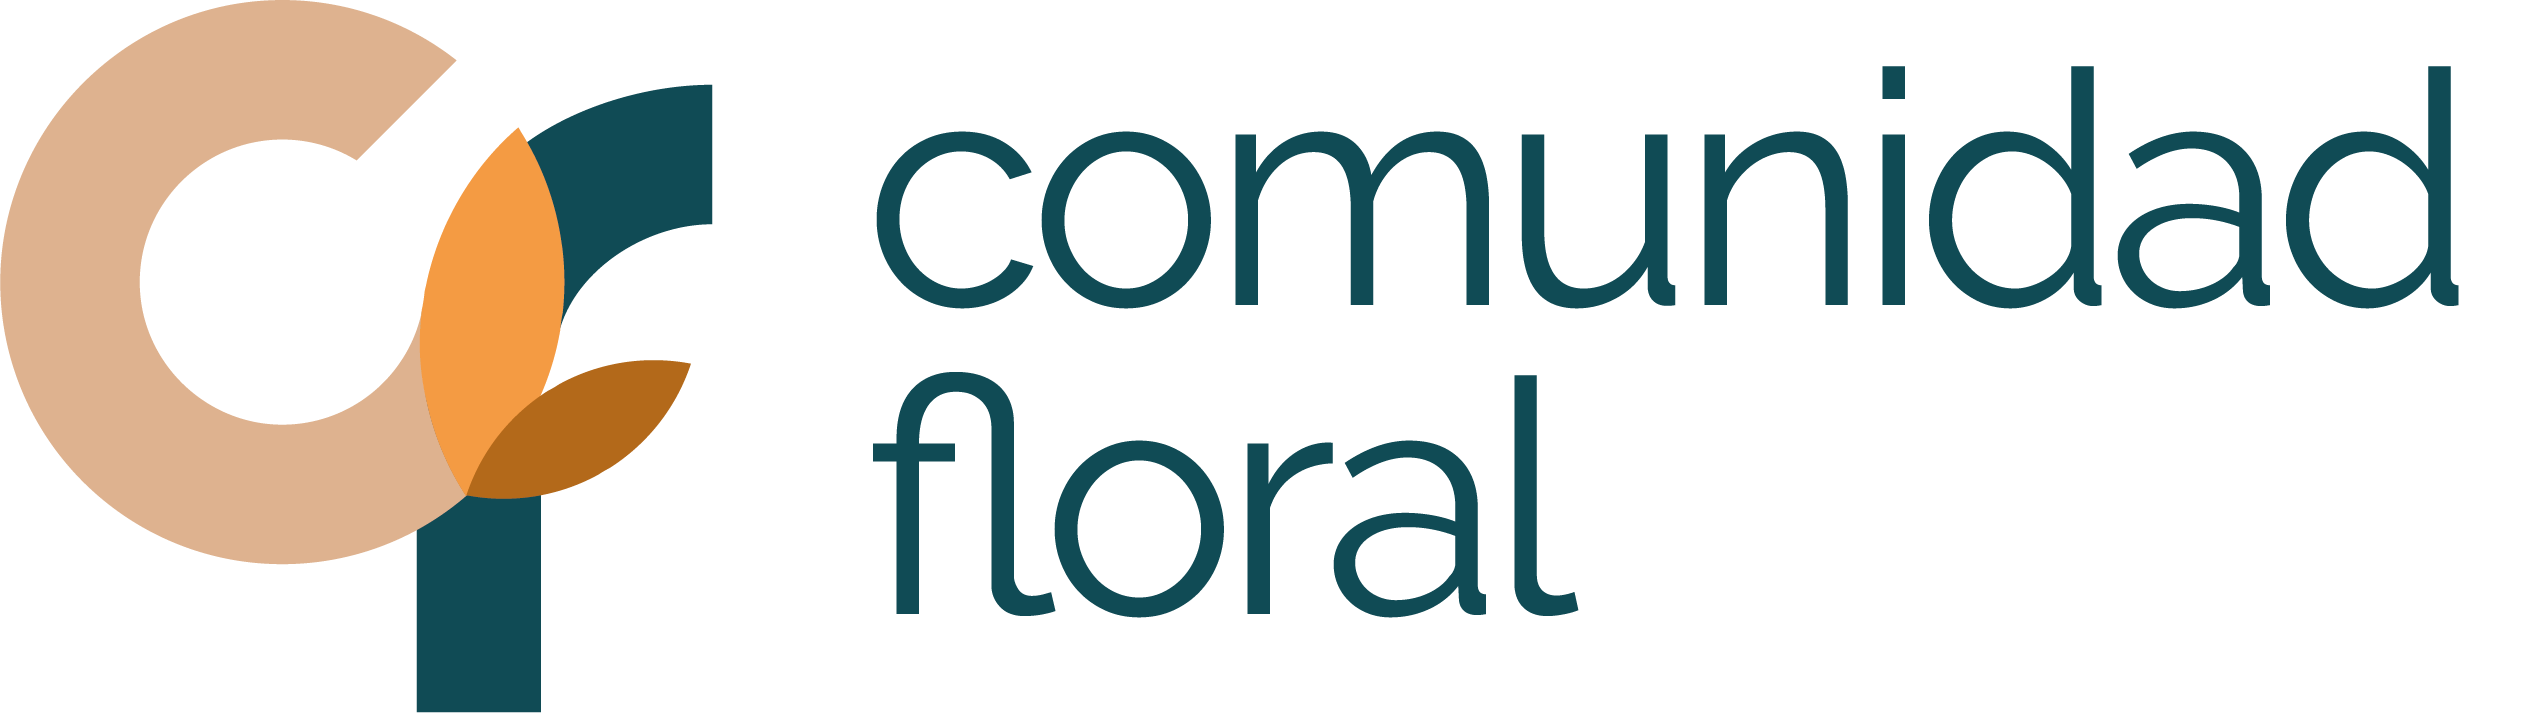 MKT Comunidad Floral